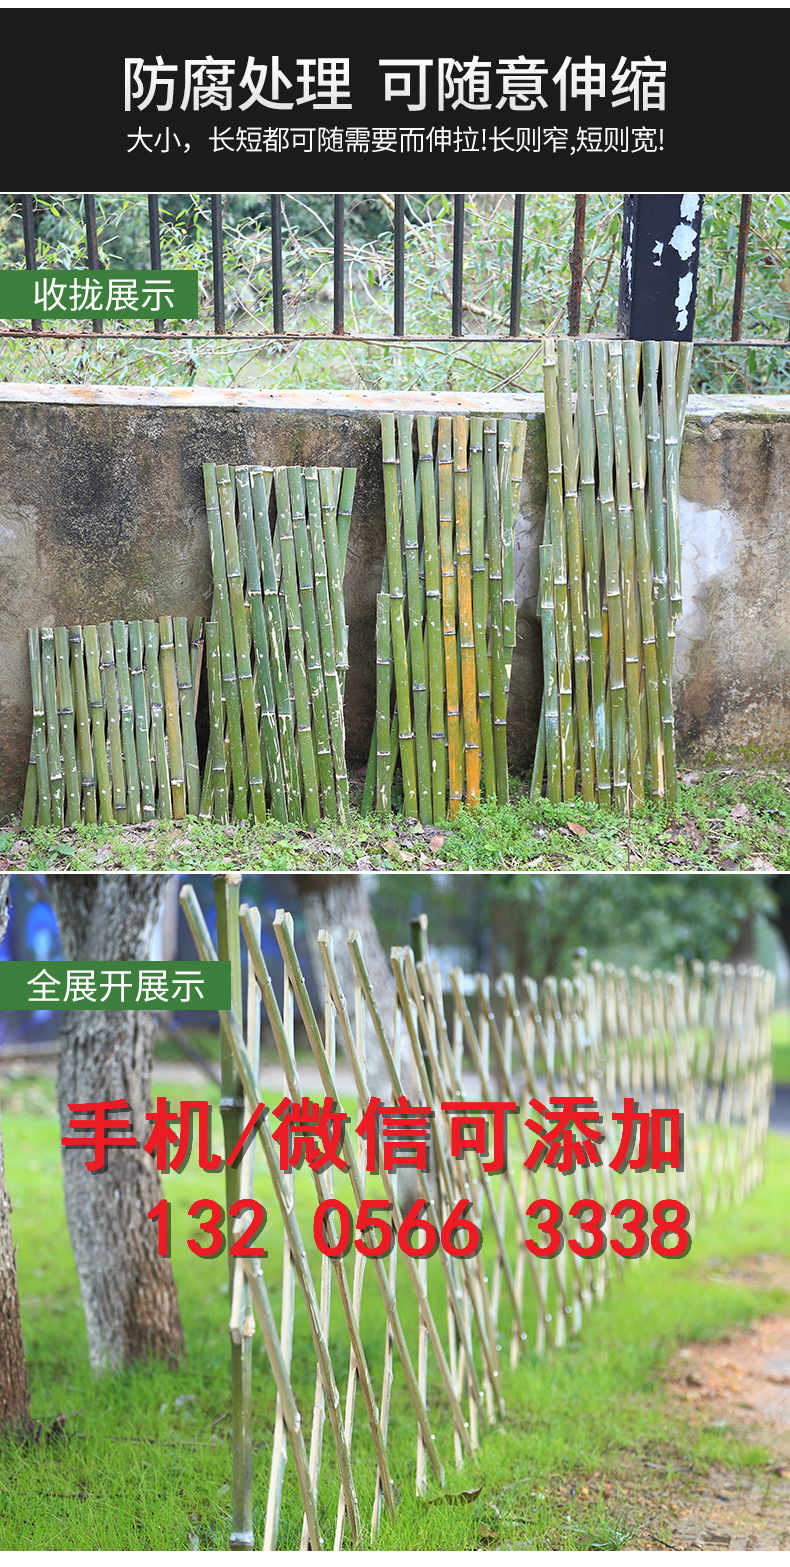 天津西青菜园室外竹子竹片竹子竹篱笆竹子护栏